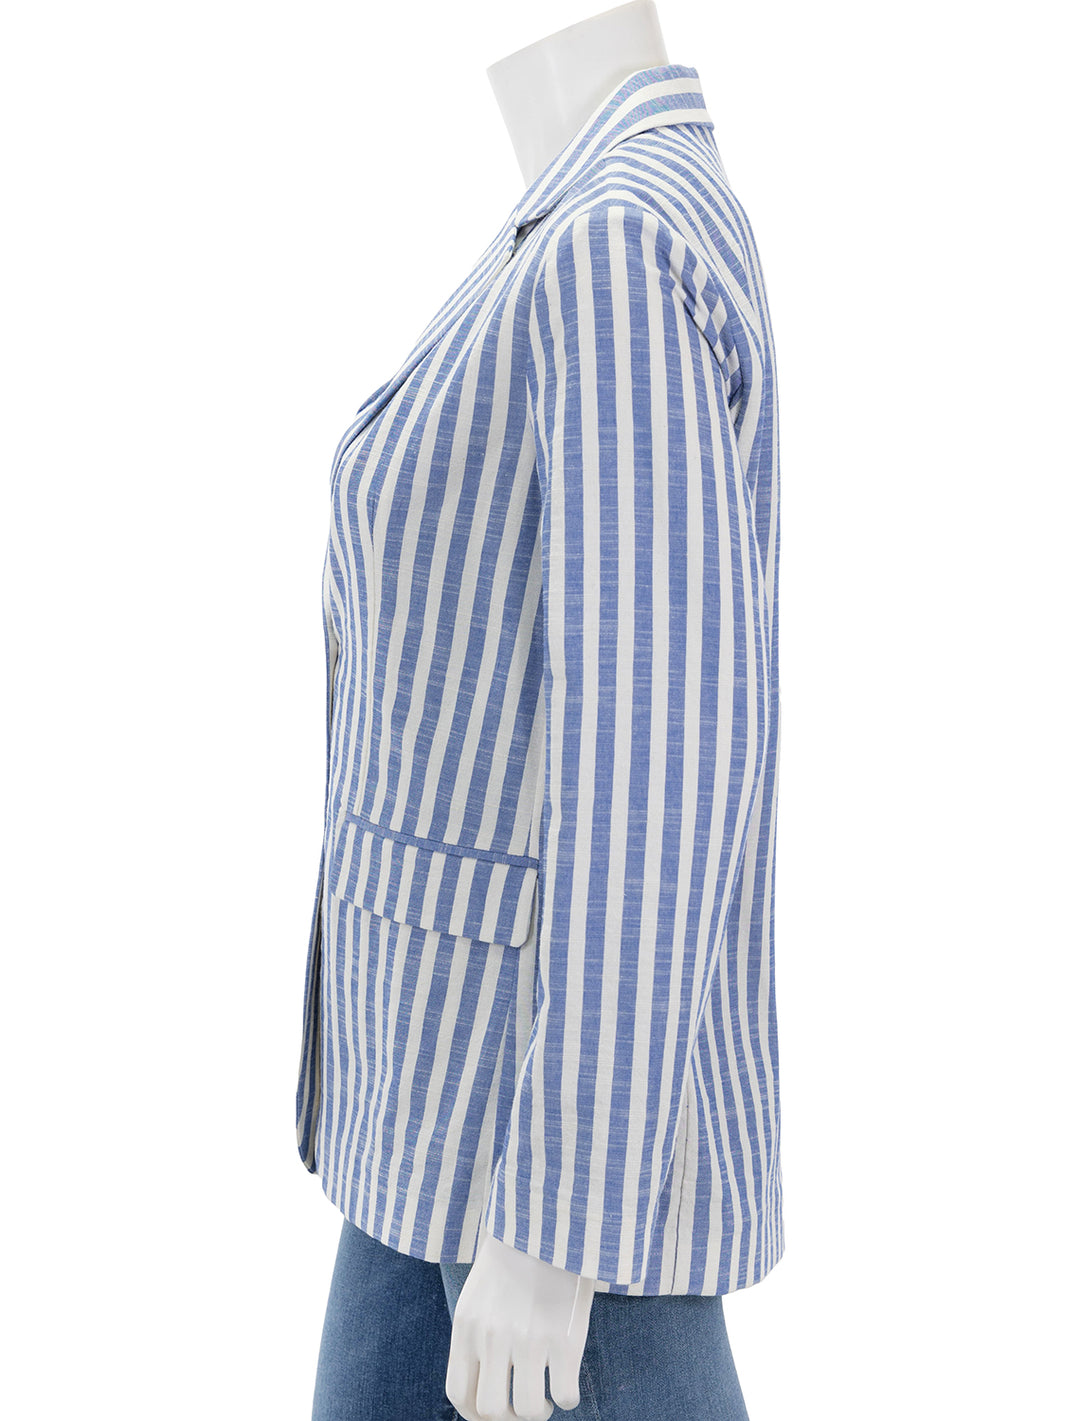 Side view of Nation LTD's beau blazer in parisian blue stripe.